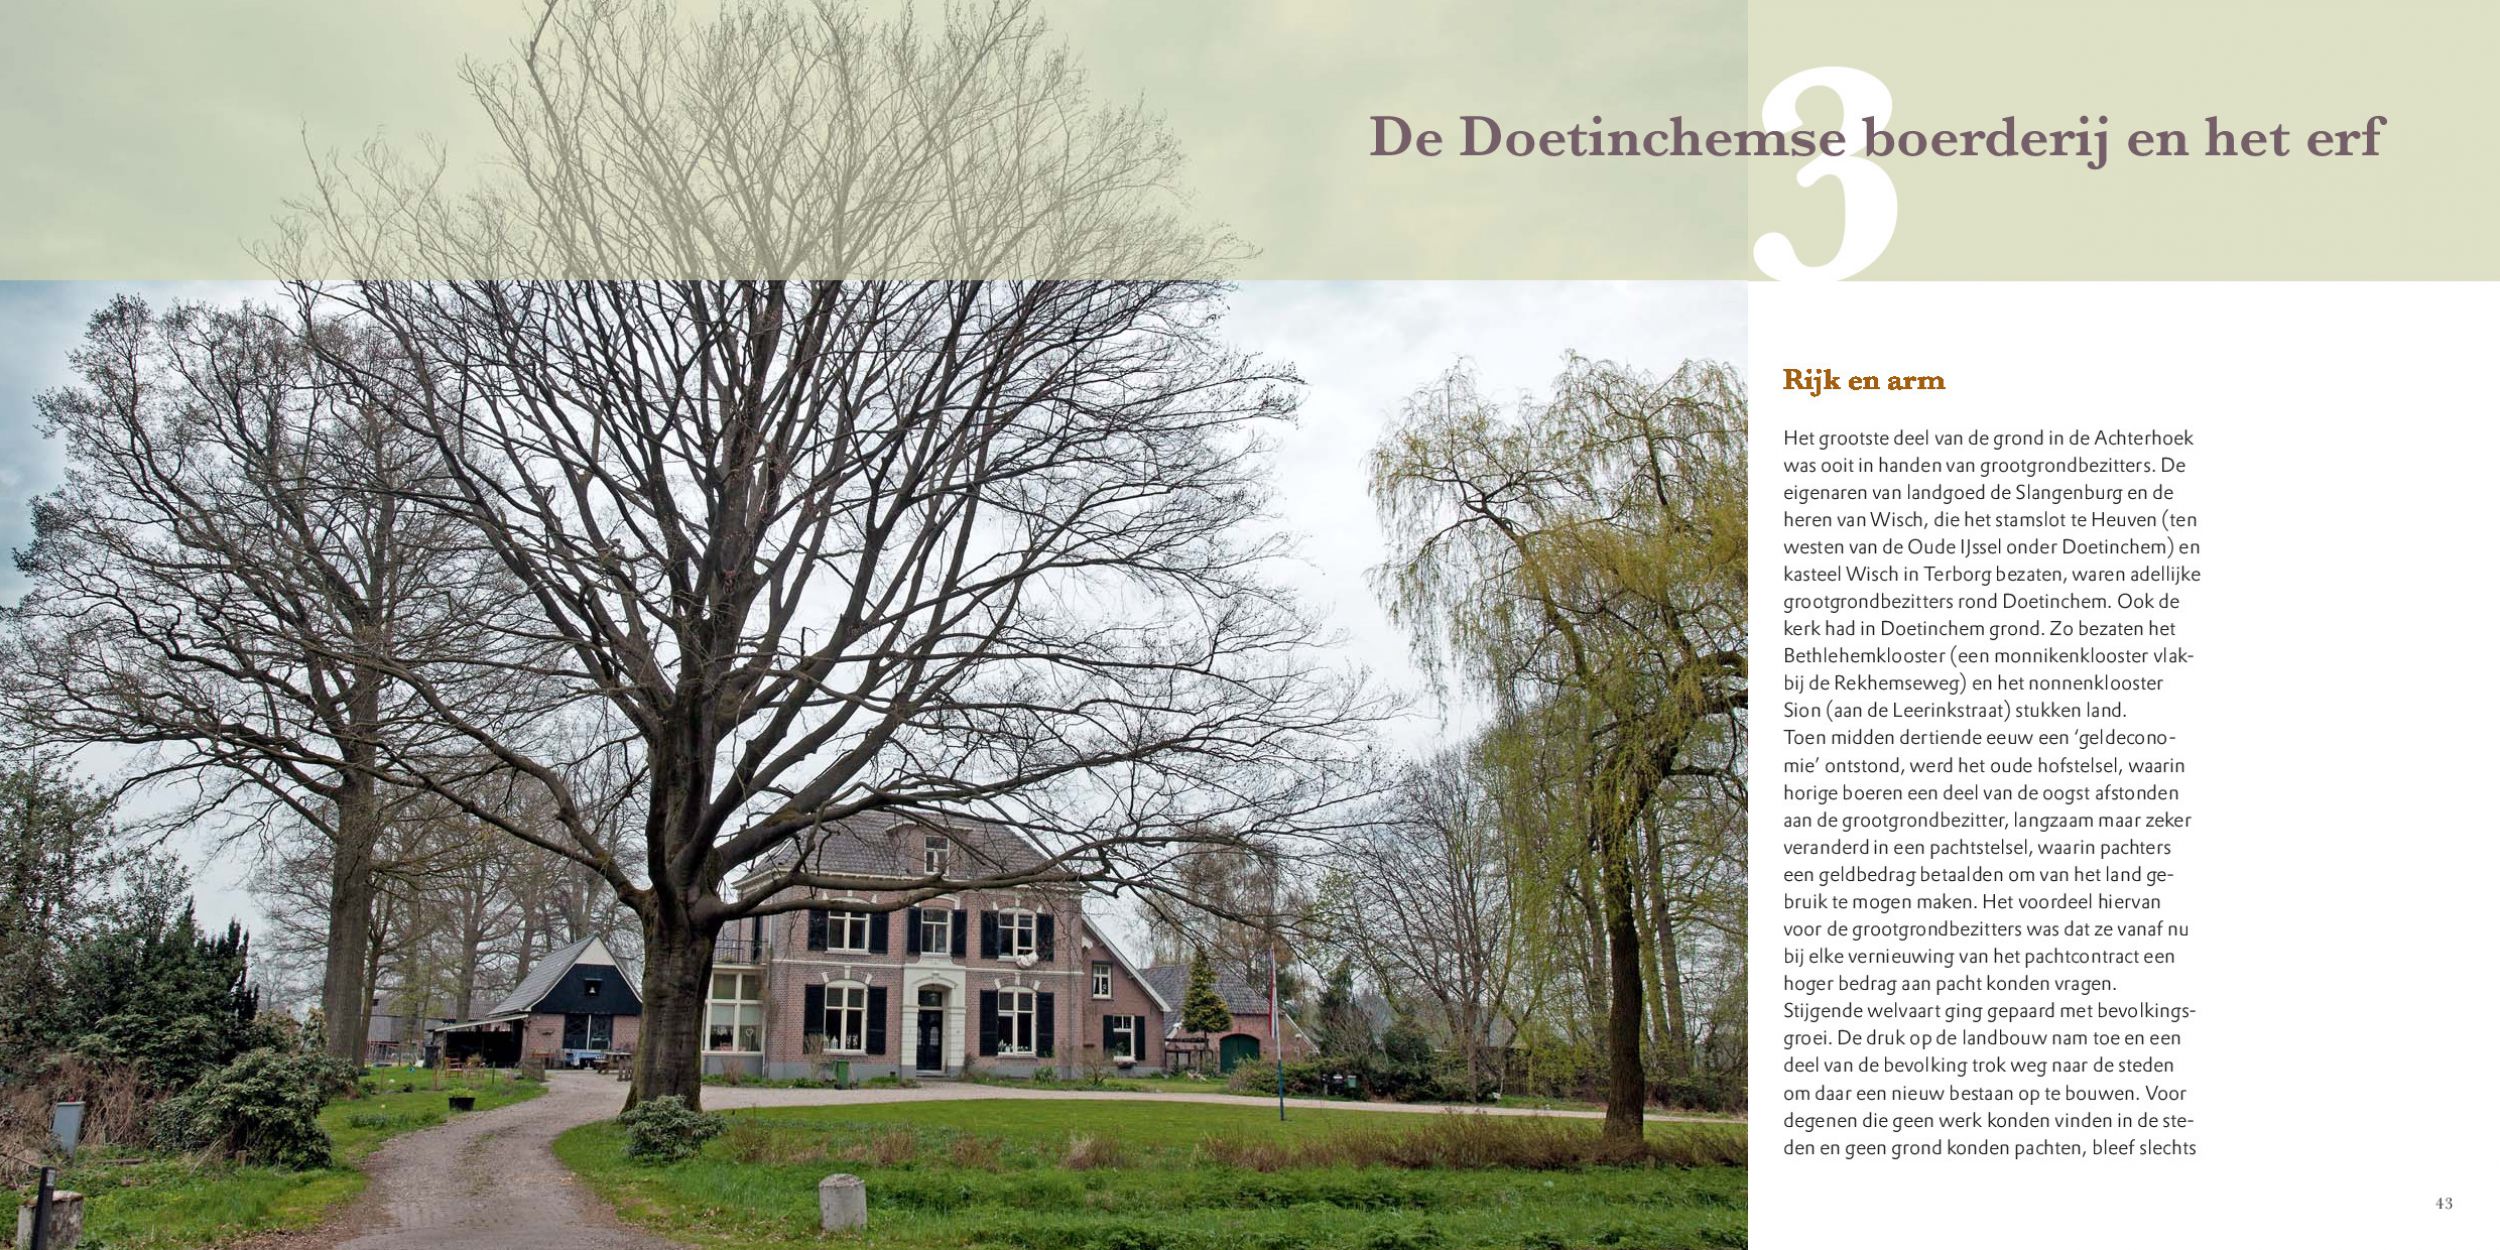 Inkijkexemplaar van het boek: <em>Erfbeplanting rond Doetinchem. De inrichting van historische boerenerven</em> - © Uitgeverij Matrijs